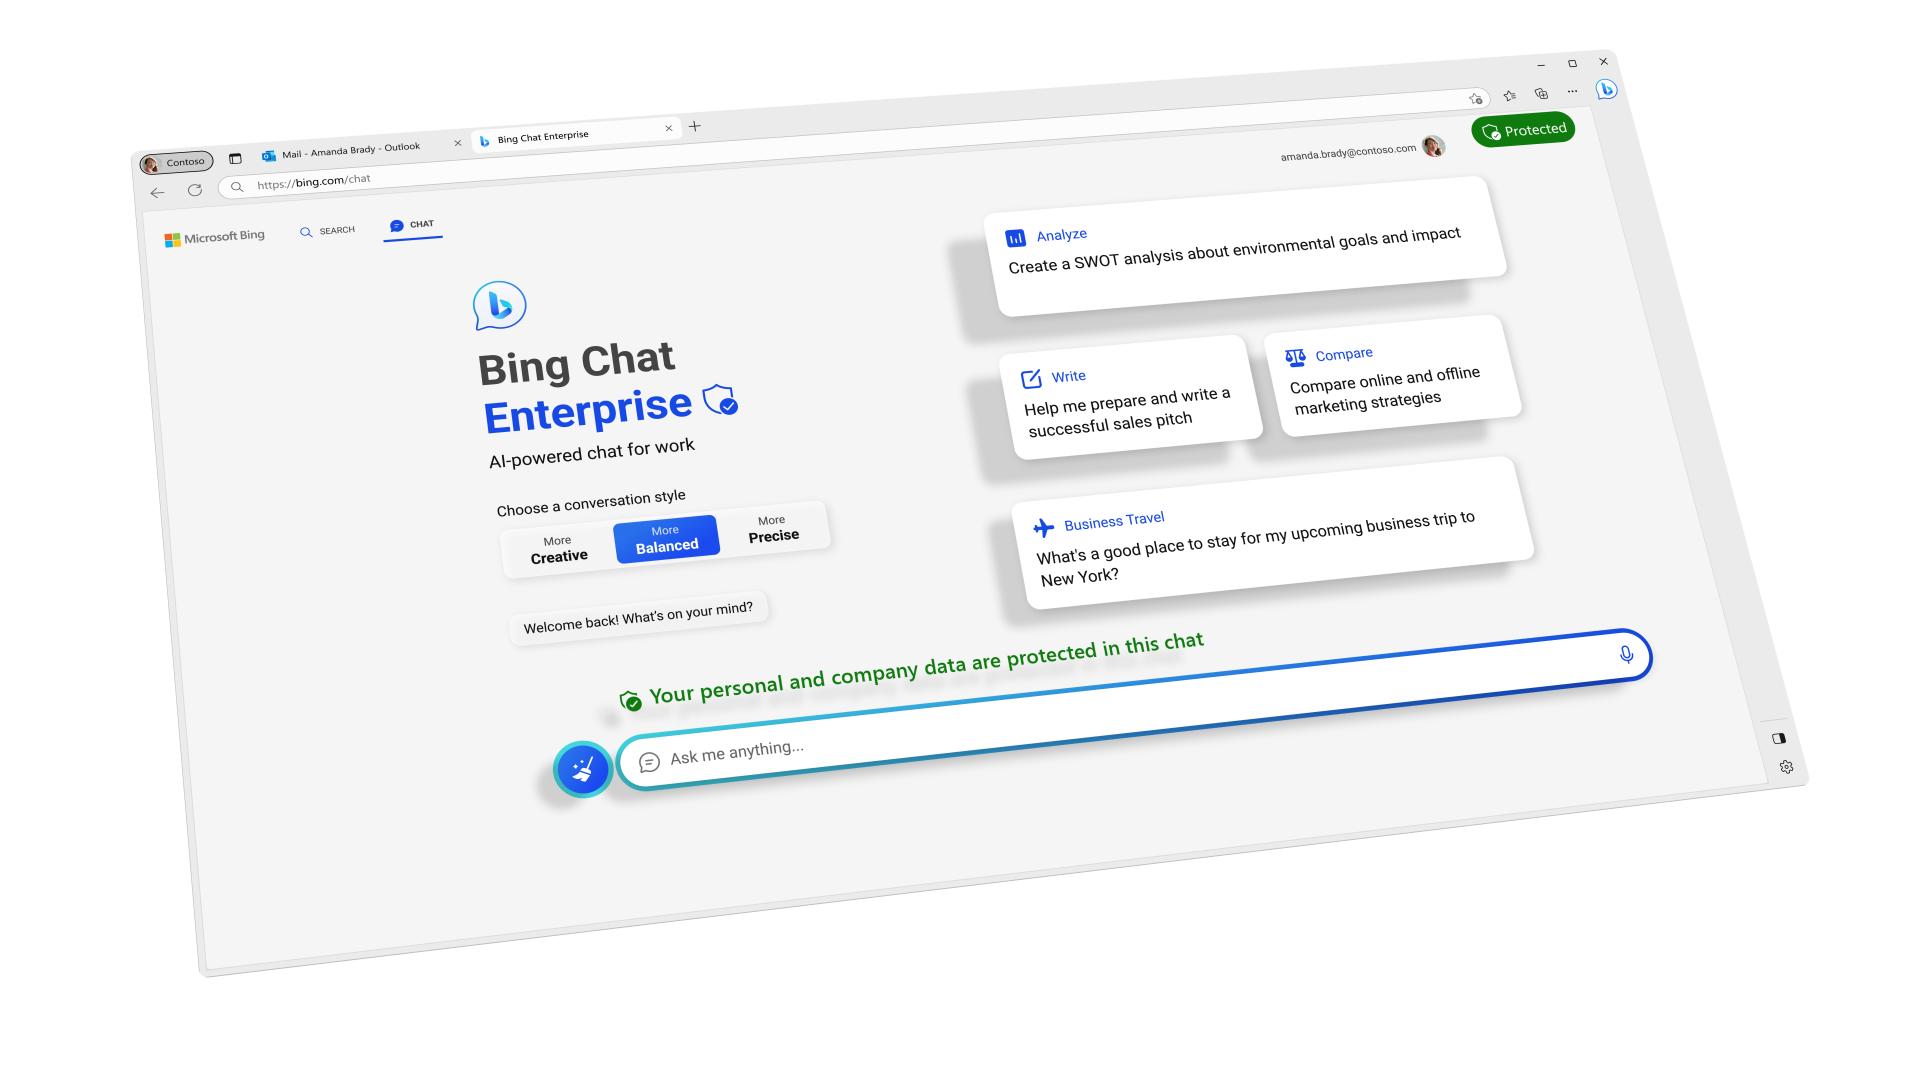 Screenshot of Bing Chat Enterprise webpage